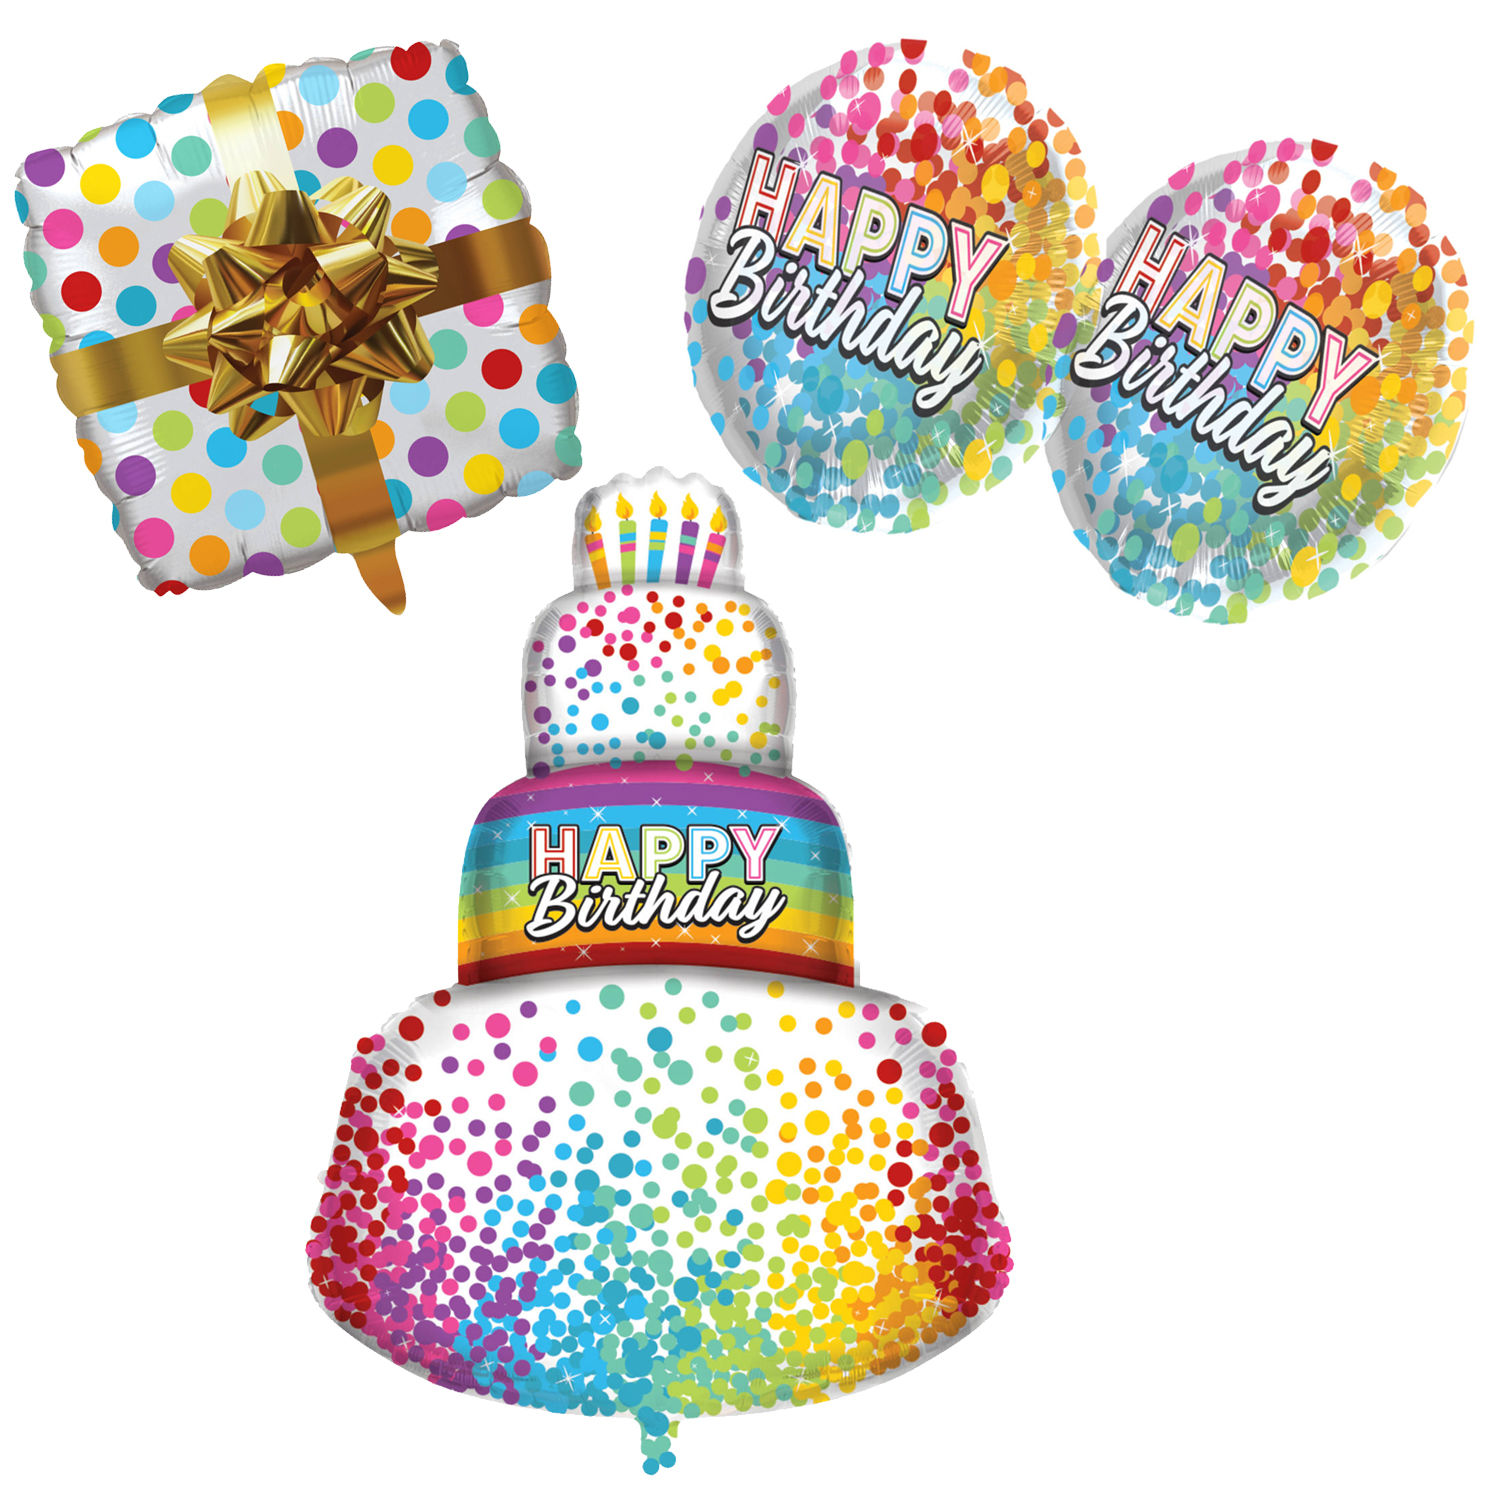 Ballonset Helium & Ballons Happy Birthday, bunte Helium-Ballons zum Geburtstag Bild 2